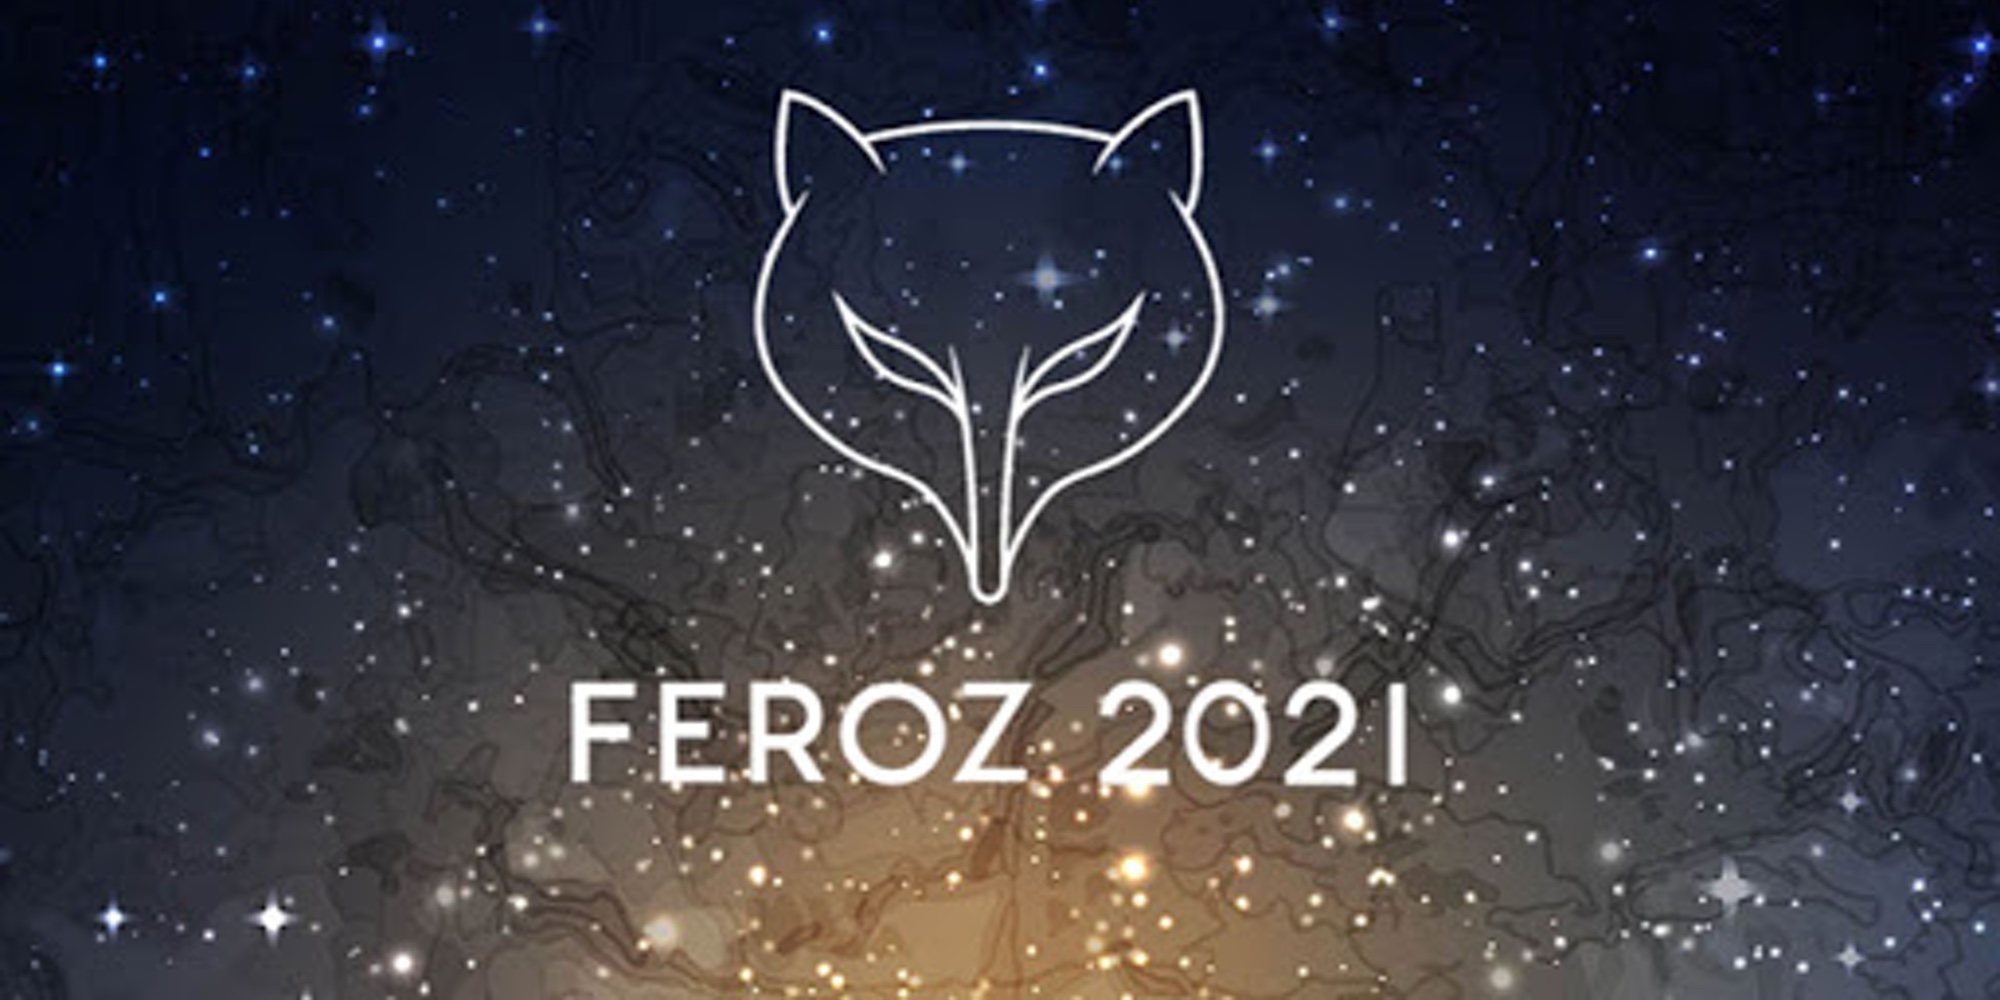 Lista completa de los ganadores de los Premios Feroz 2021